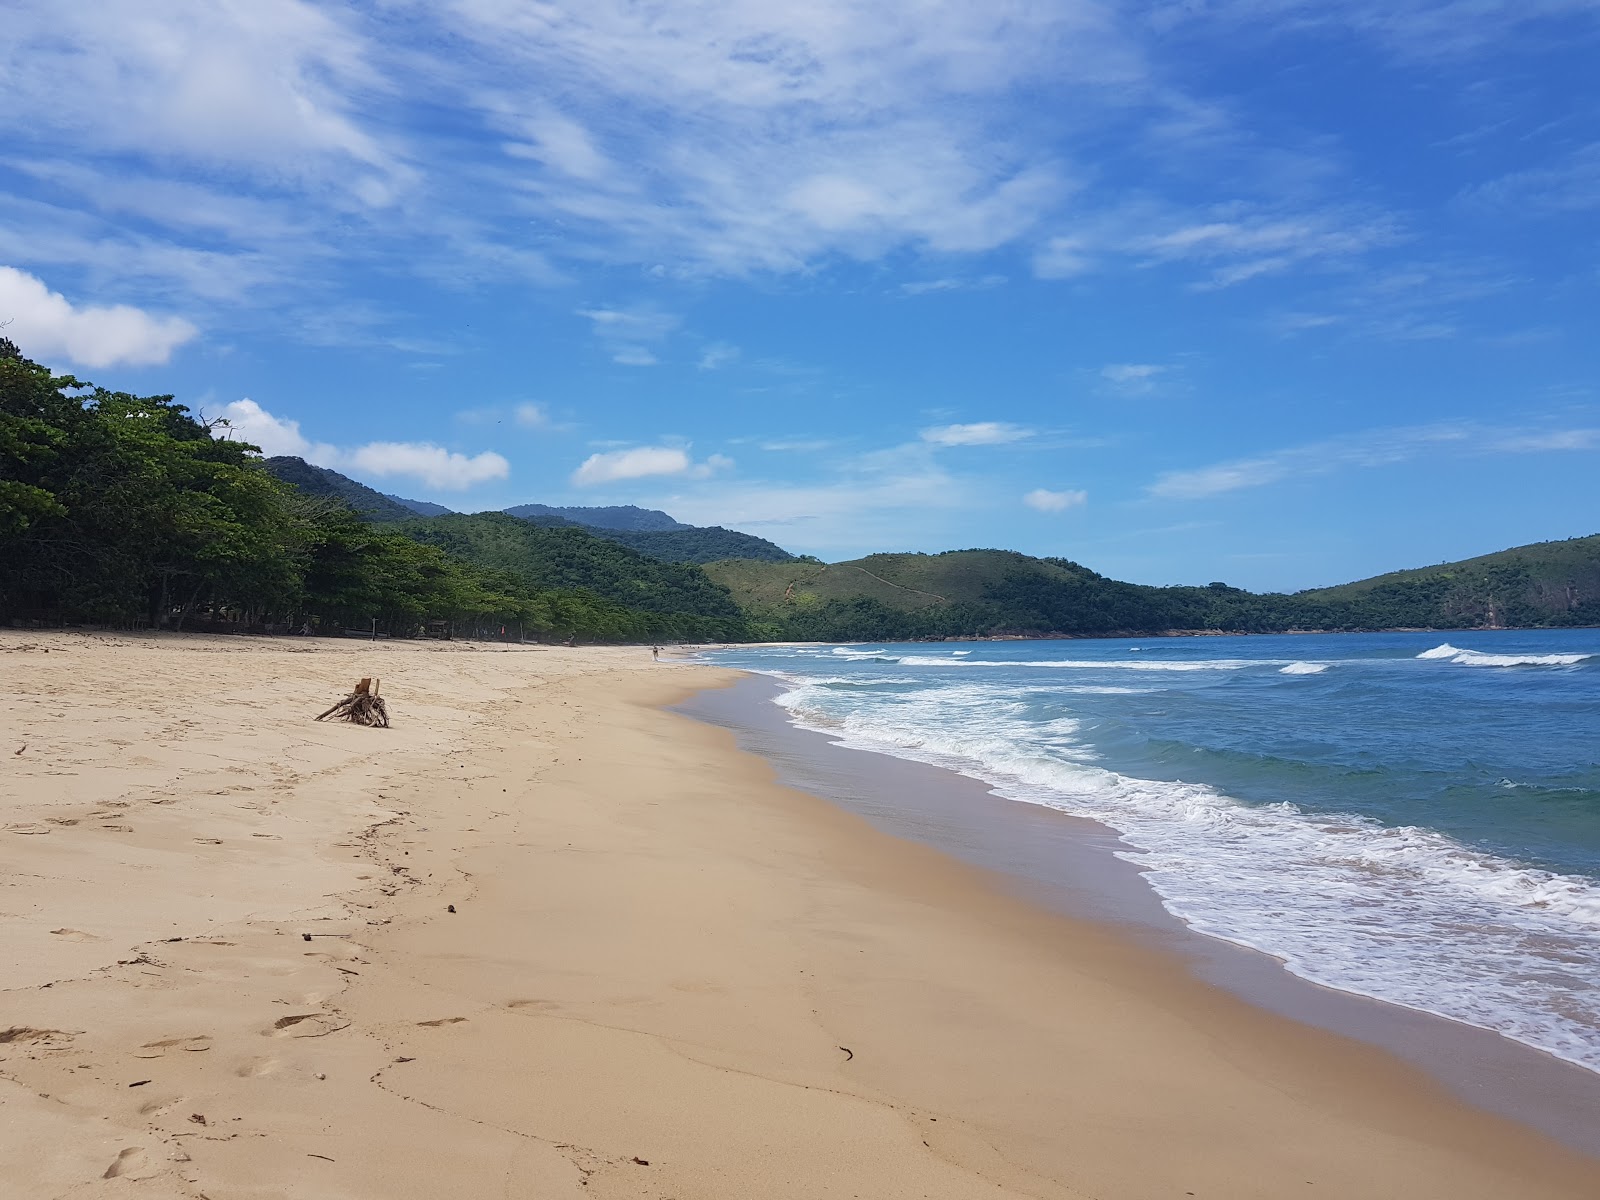 Fotografie cu Praia do Sono - locul popular printre cunoscătorii de relaxare